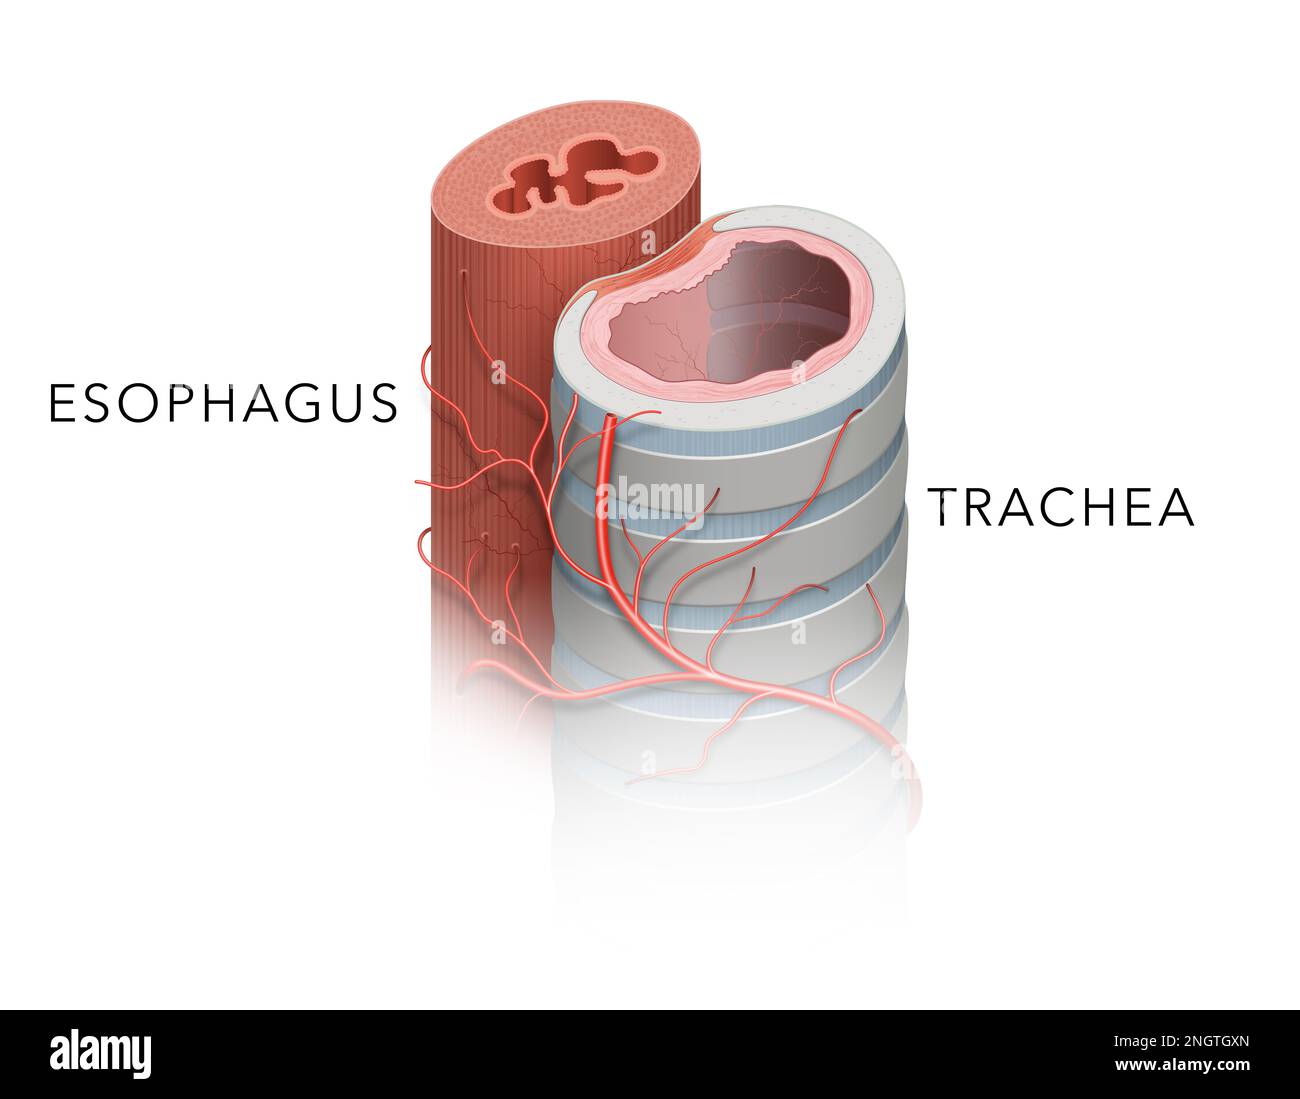 Anatomia della trachea e dell'esofago Foto Stock